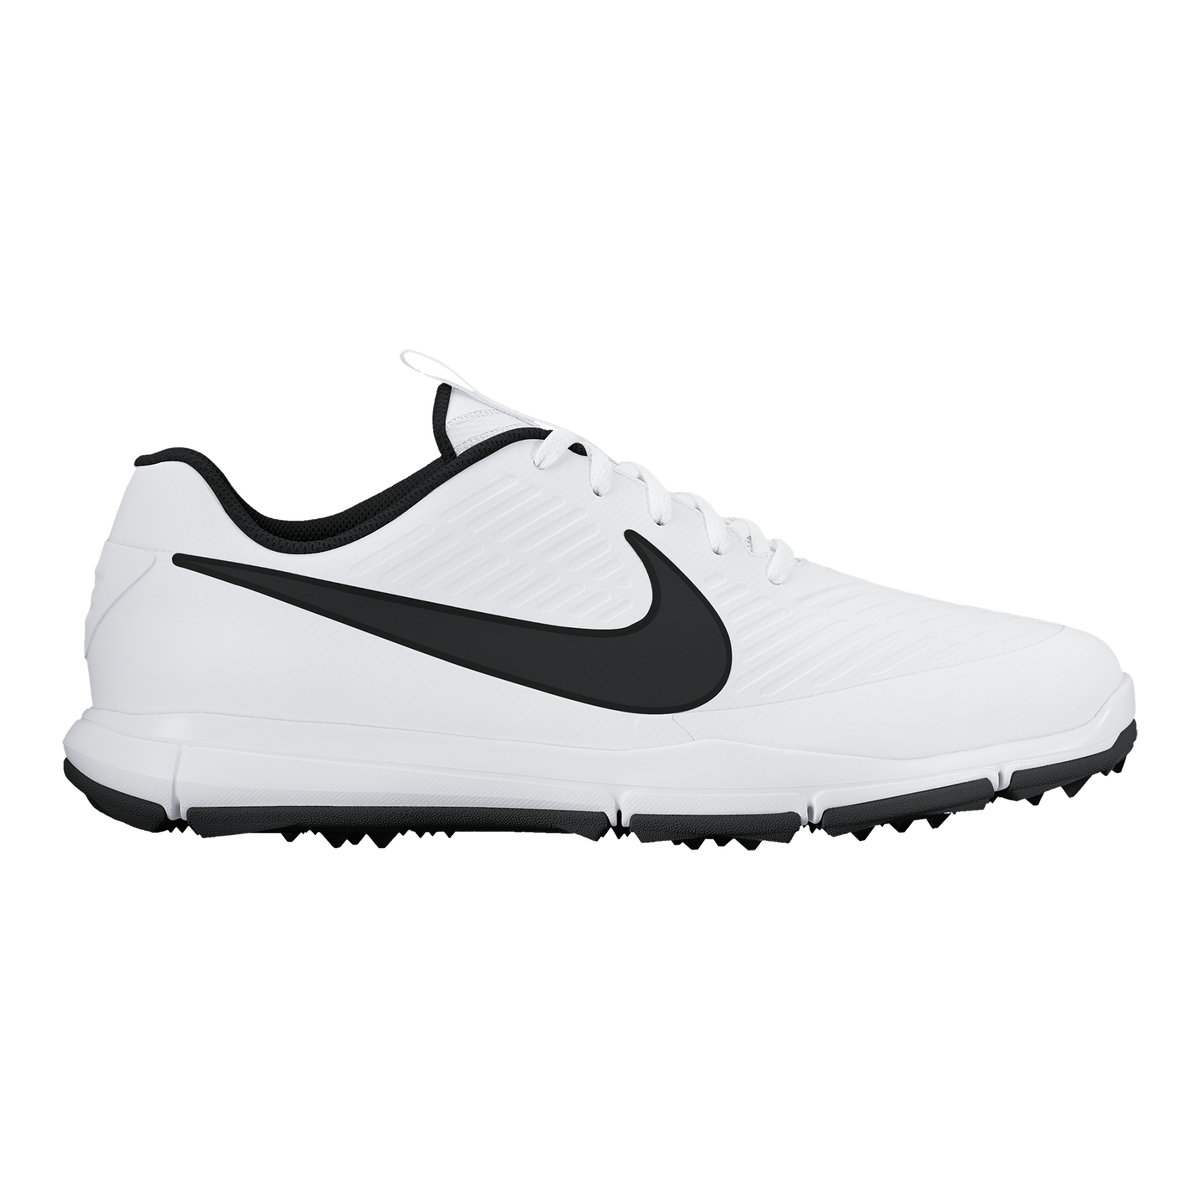 Nike Explorer 2 Men's Golf Shoe - White/Black | PGA TOUR Superstore